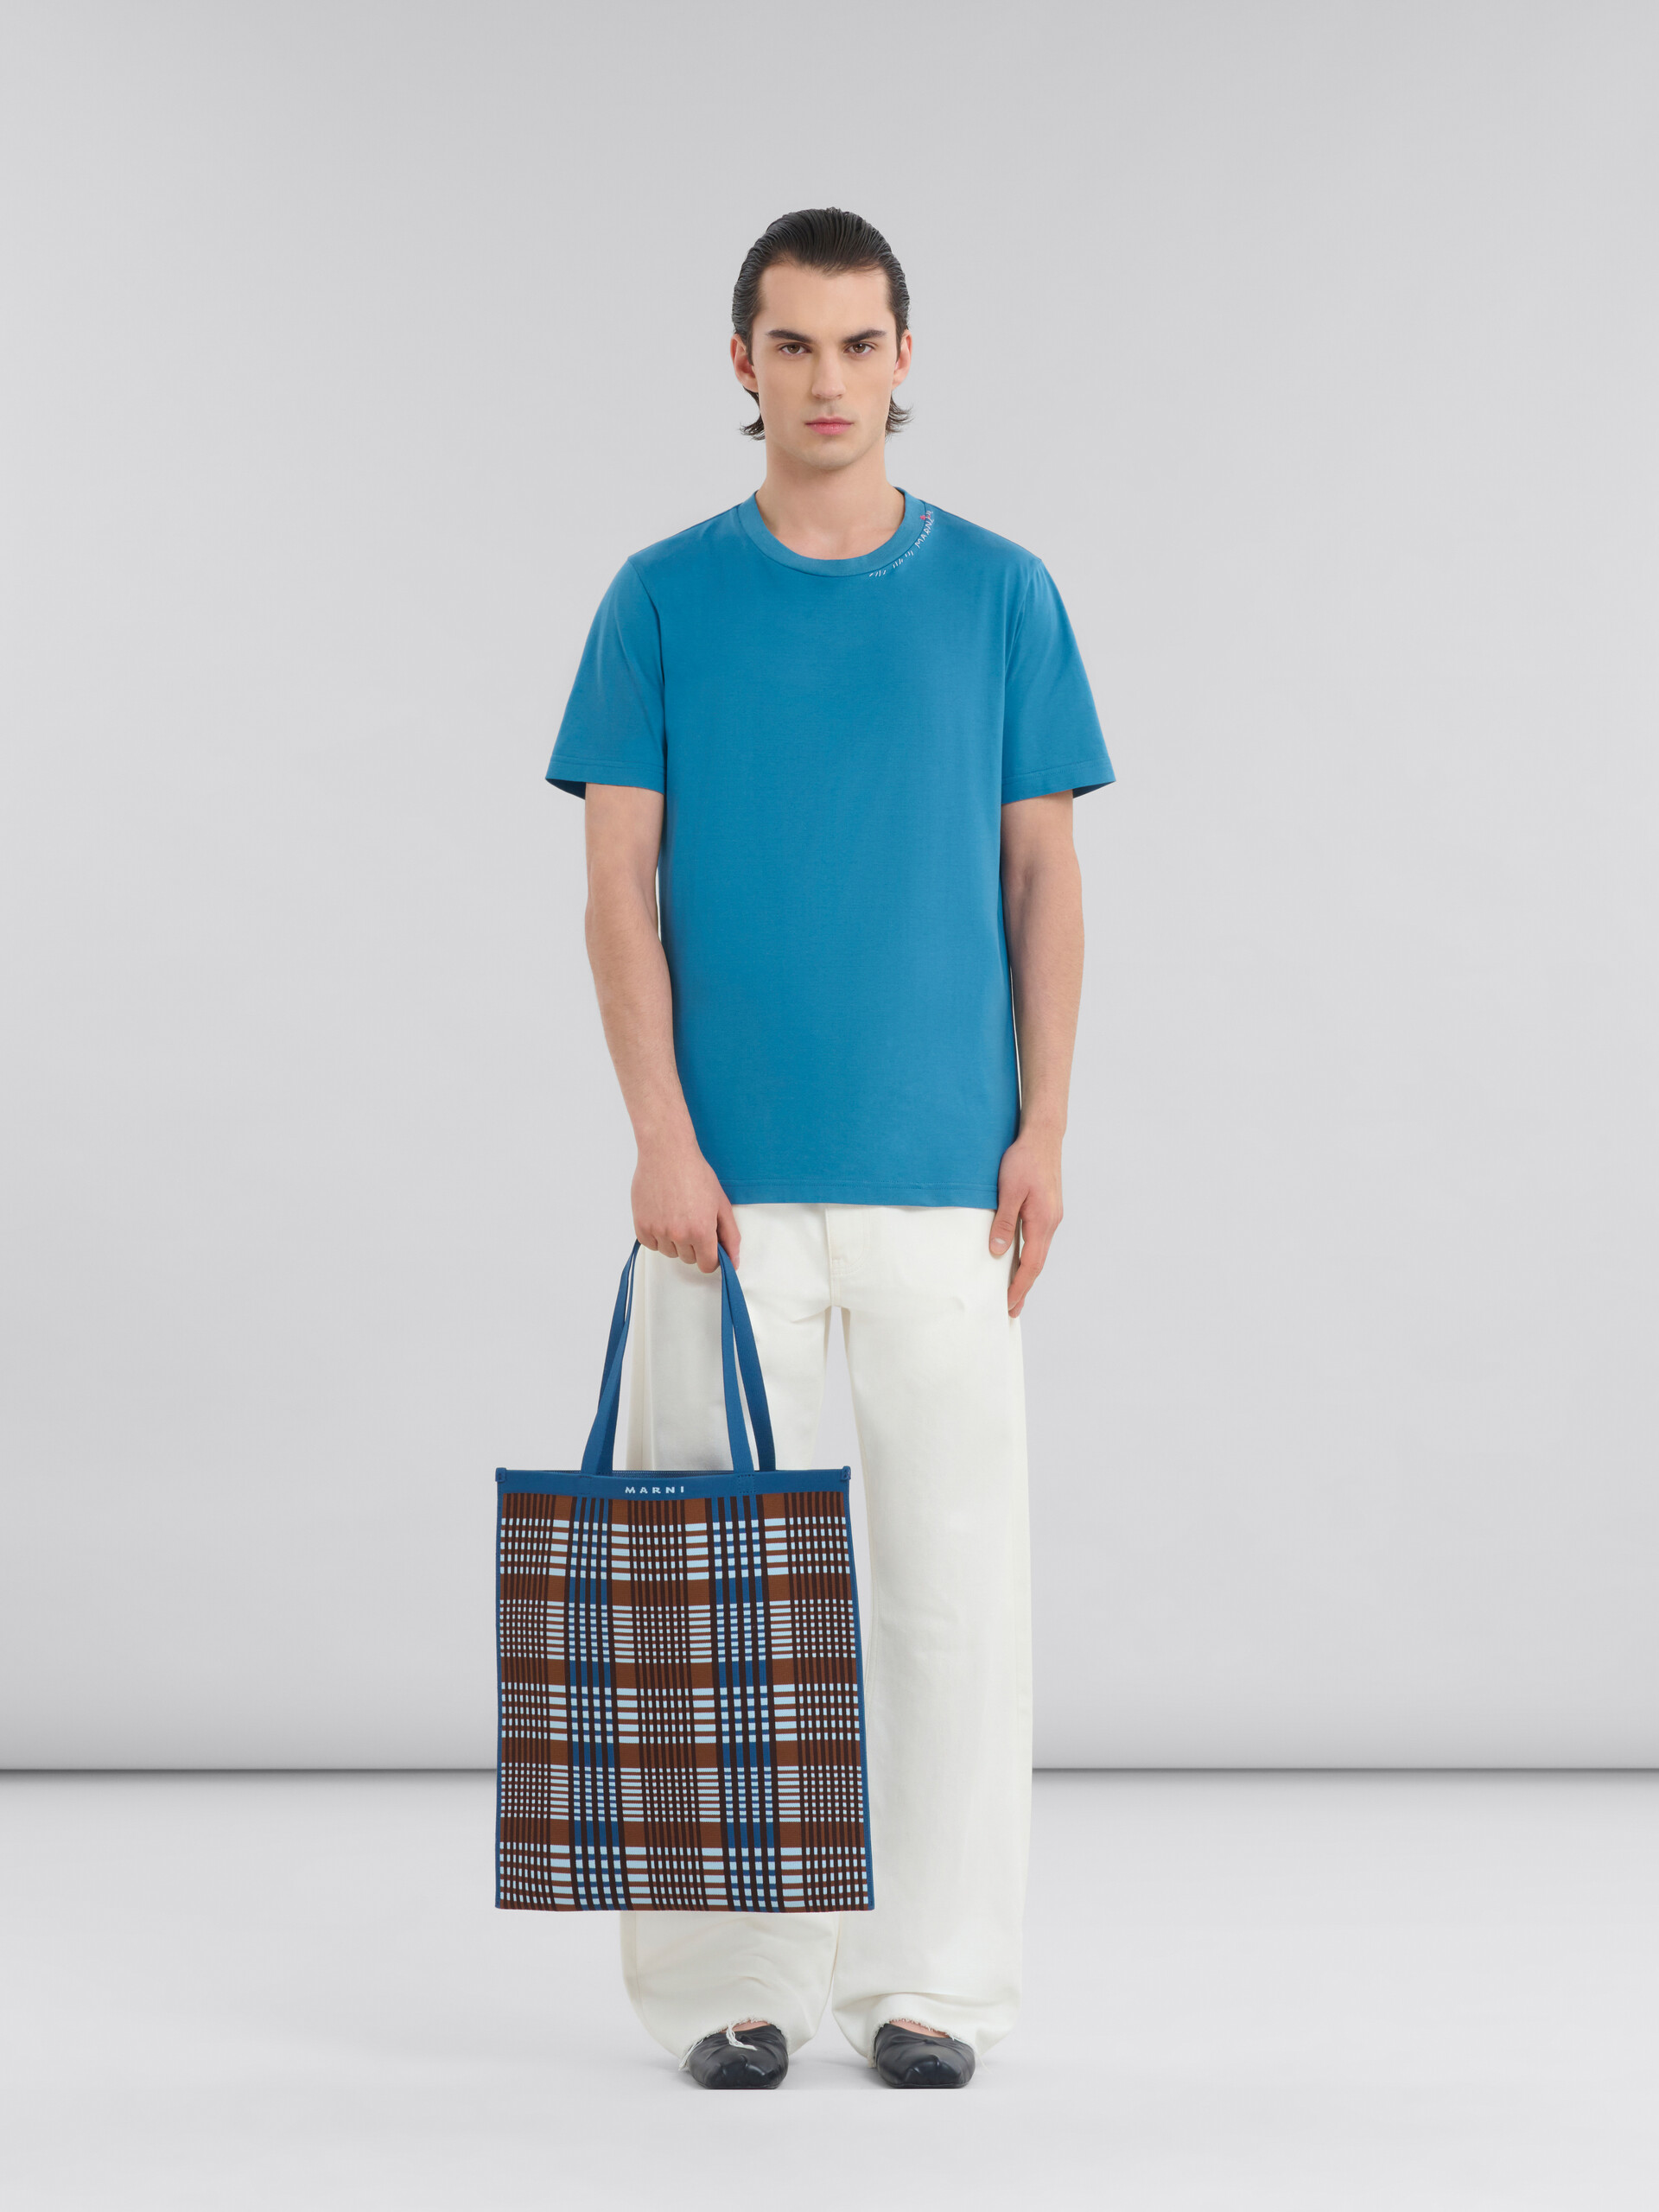 Tote Bag in jacquard a quadri marrone e blu - Borse shopping - Image 2